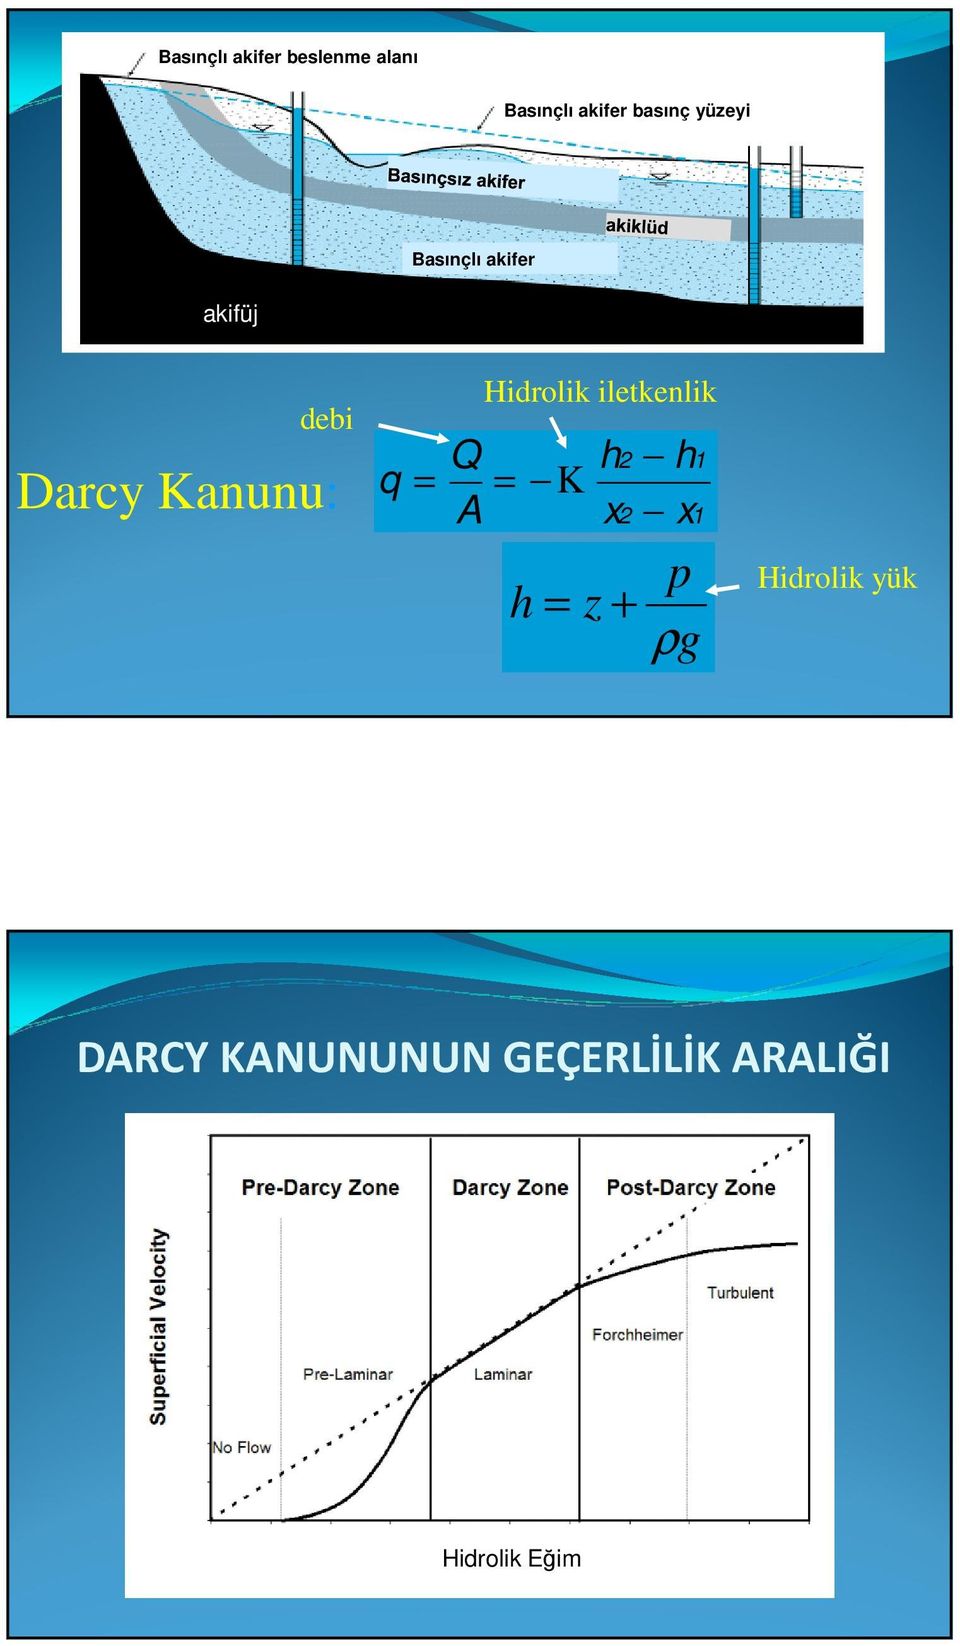 iletkenlik Darcy Kanunu: q = = K 1 h x h x 1 p h = z +